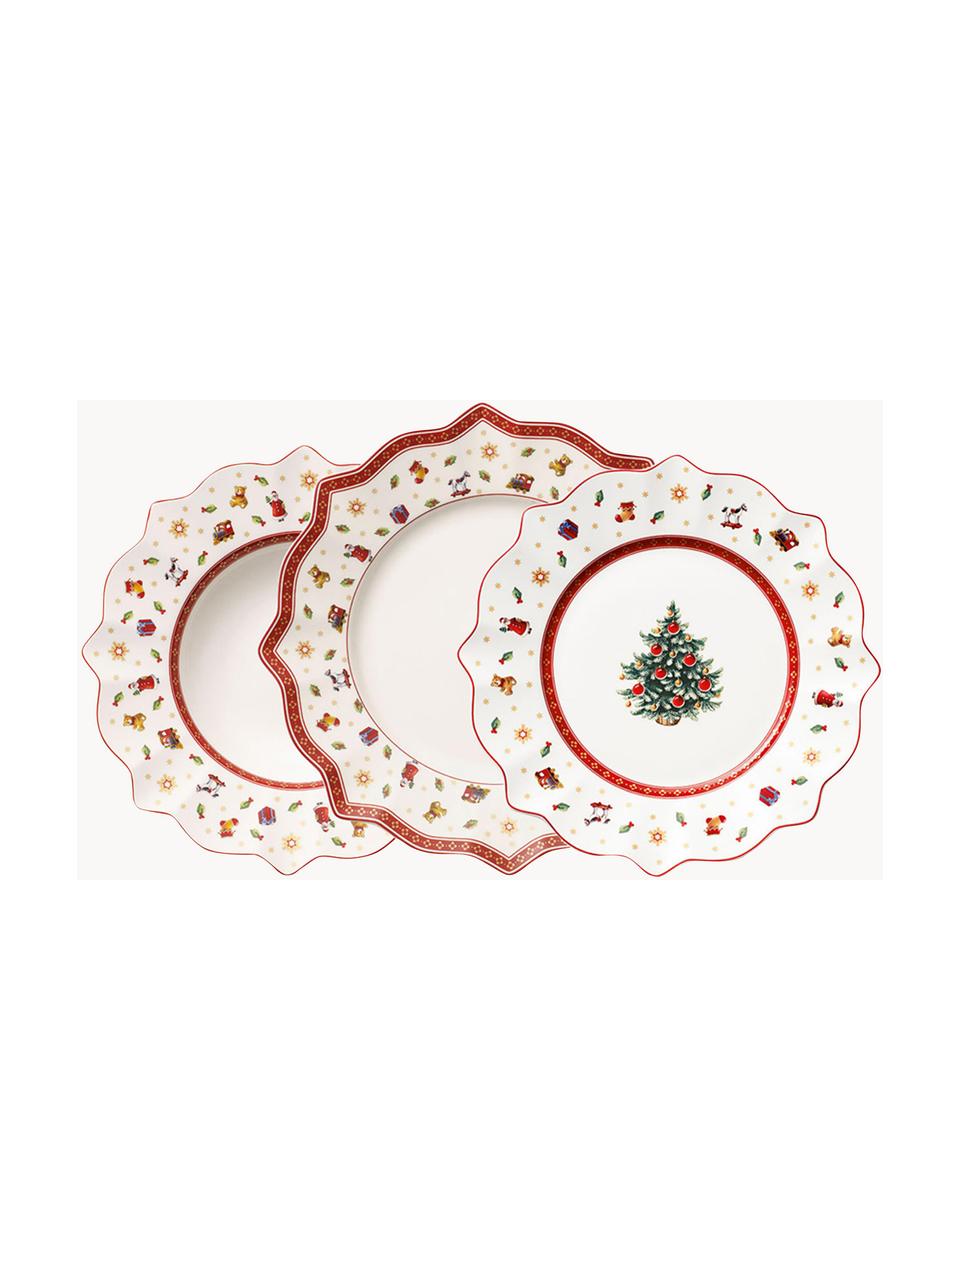 Súprava tanierov z porcelánu Toy's Delight, 4 osoby (12 dielov), Premium porcelán, Biela, červená, vzorovaná, 4 osoby (12 dielov)